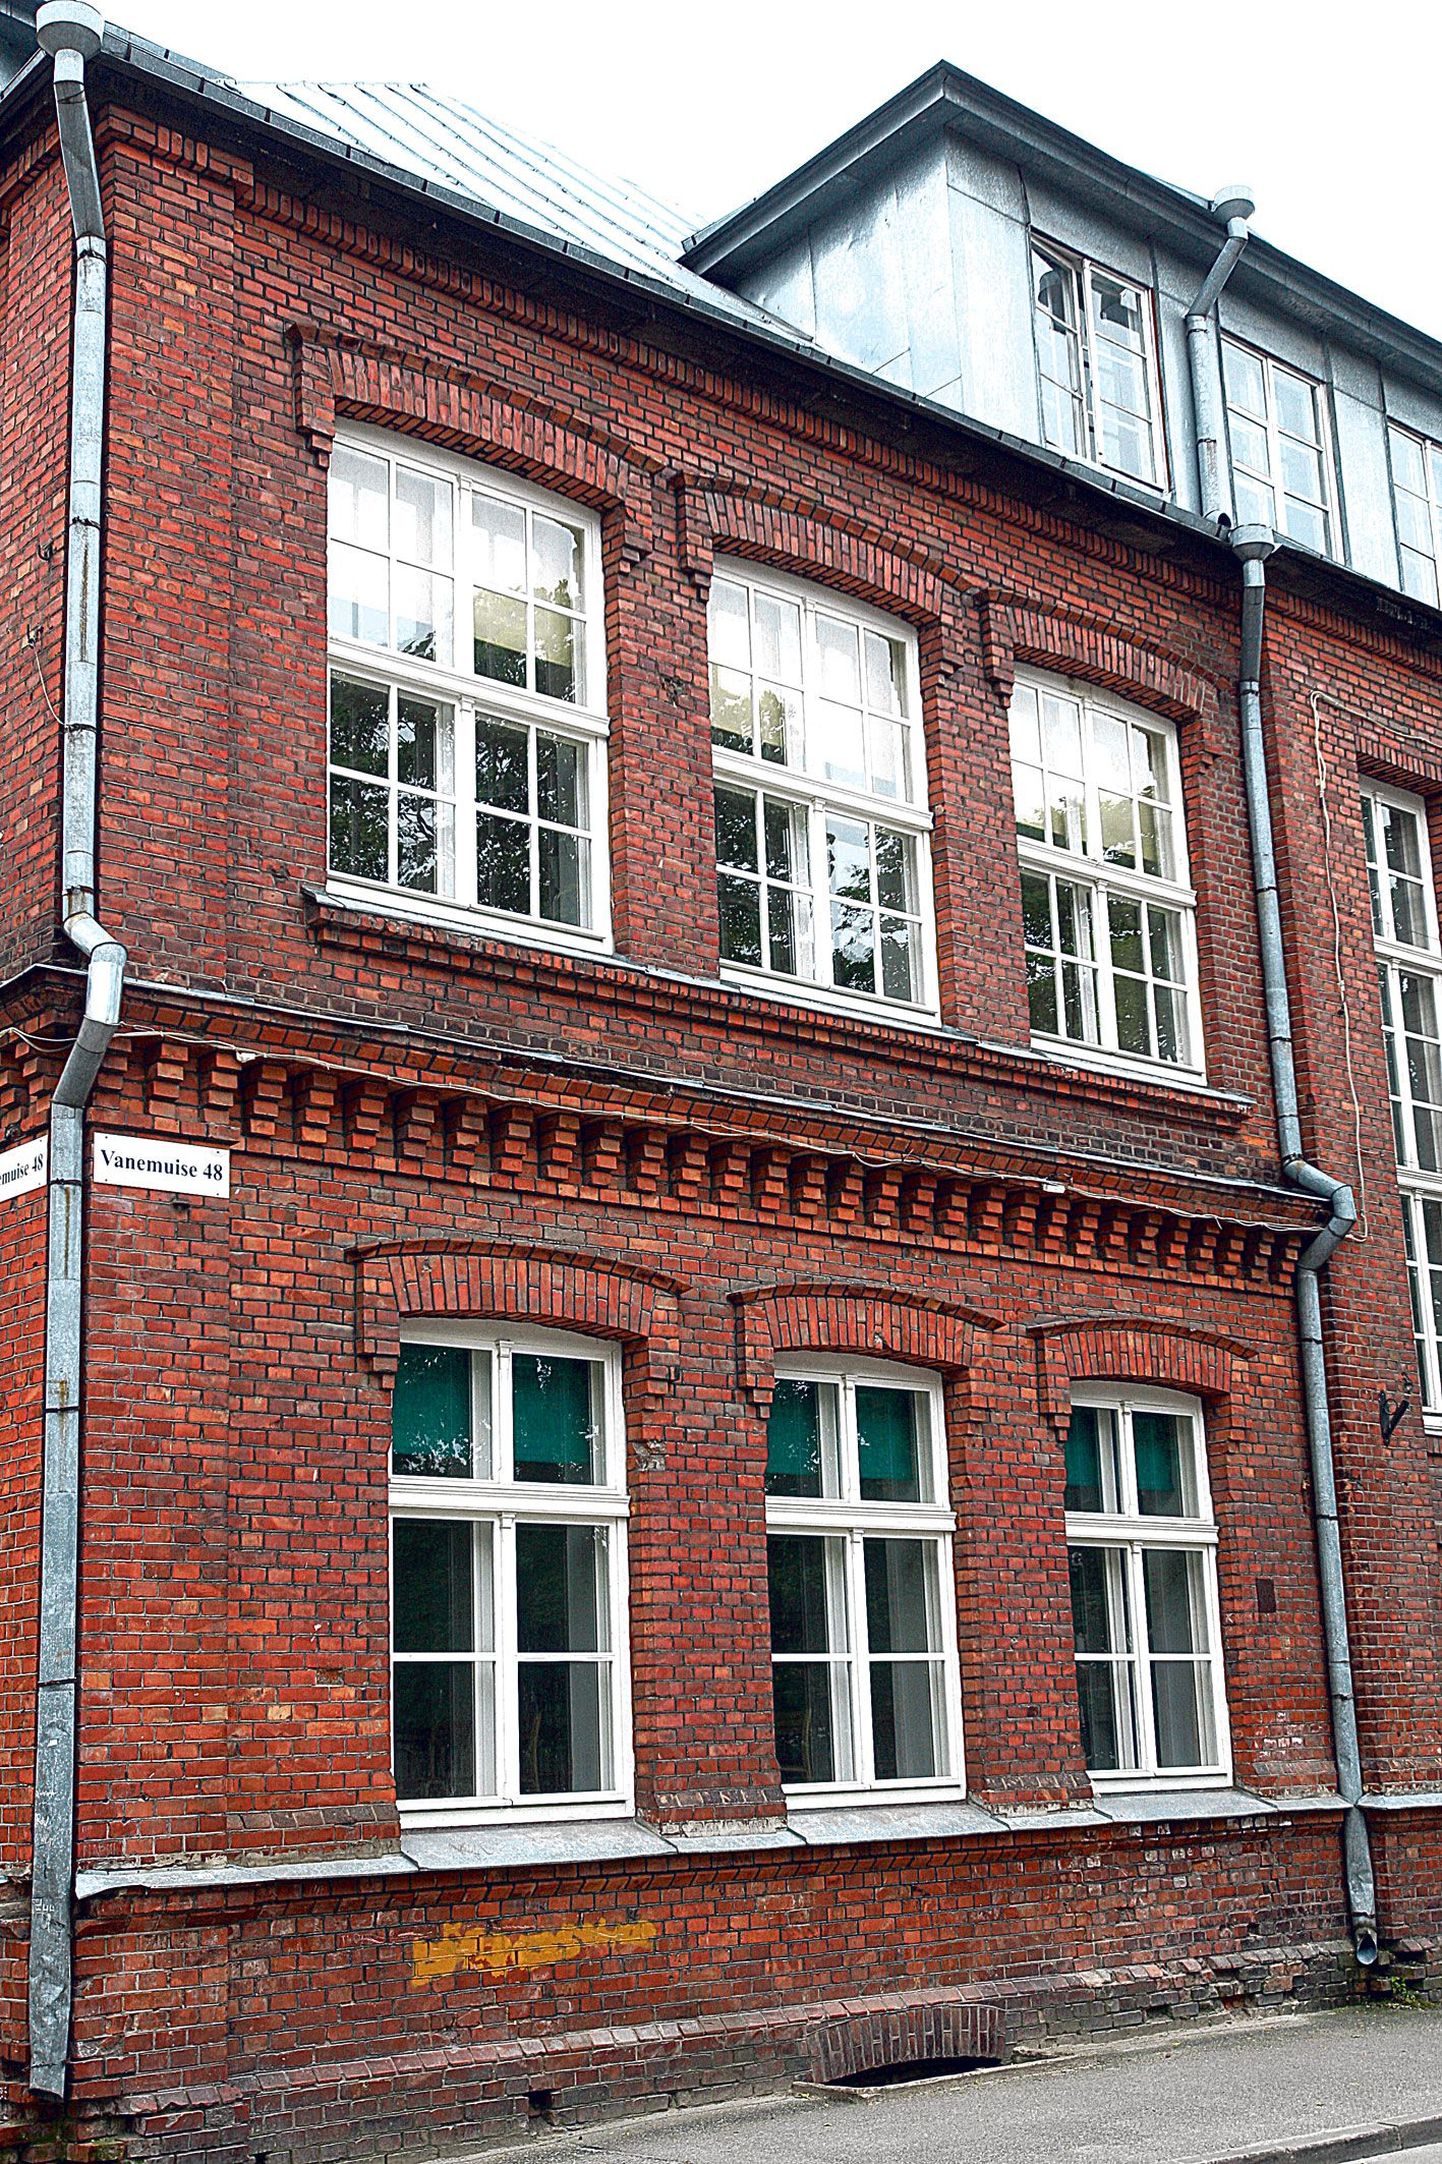 Mart Reiniku gümnaasiumi vana maja Vanemuise 48, kus praegu õpivad põhikoolilapsed.